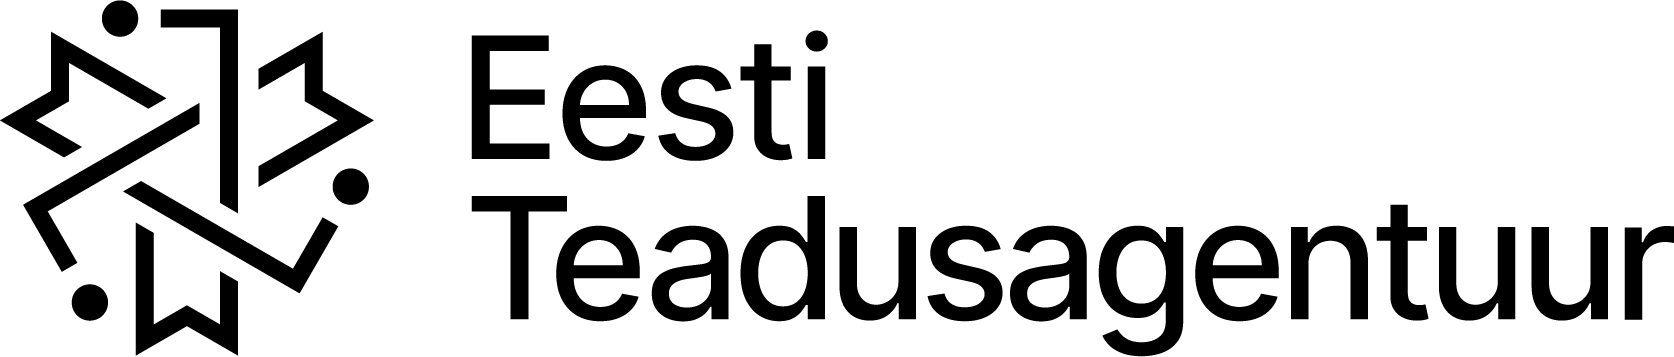 Eesti Teadusagentuur logo